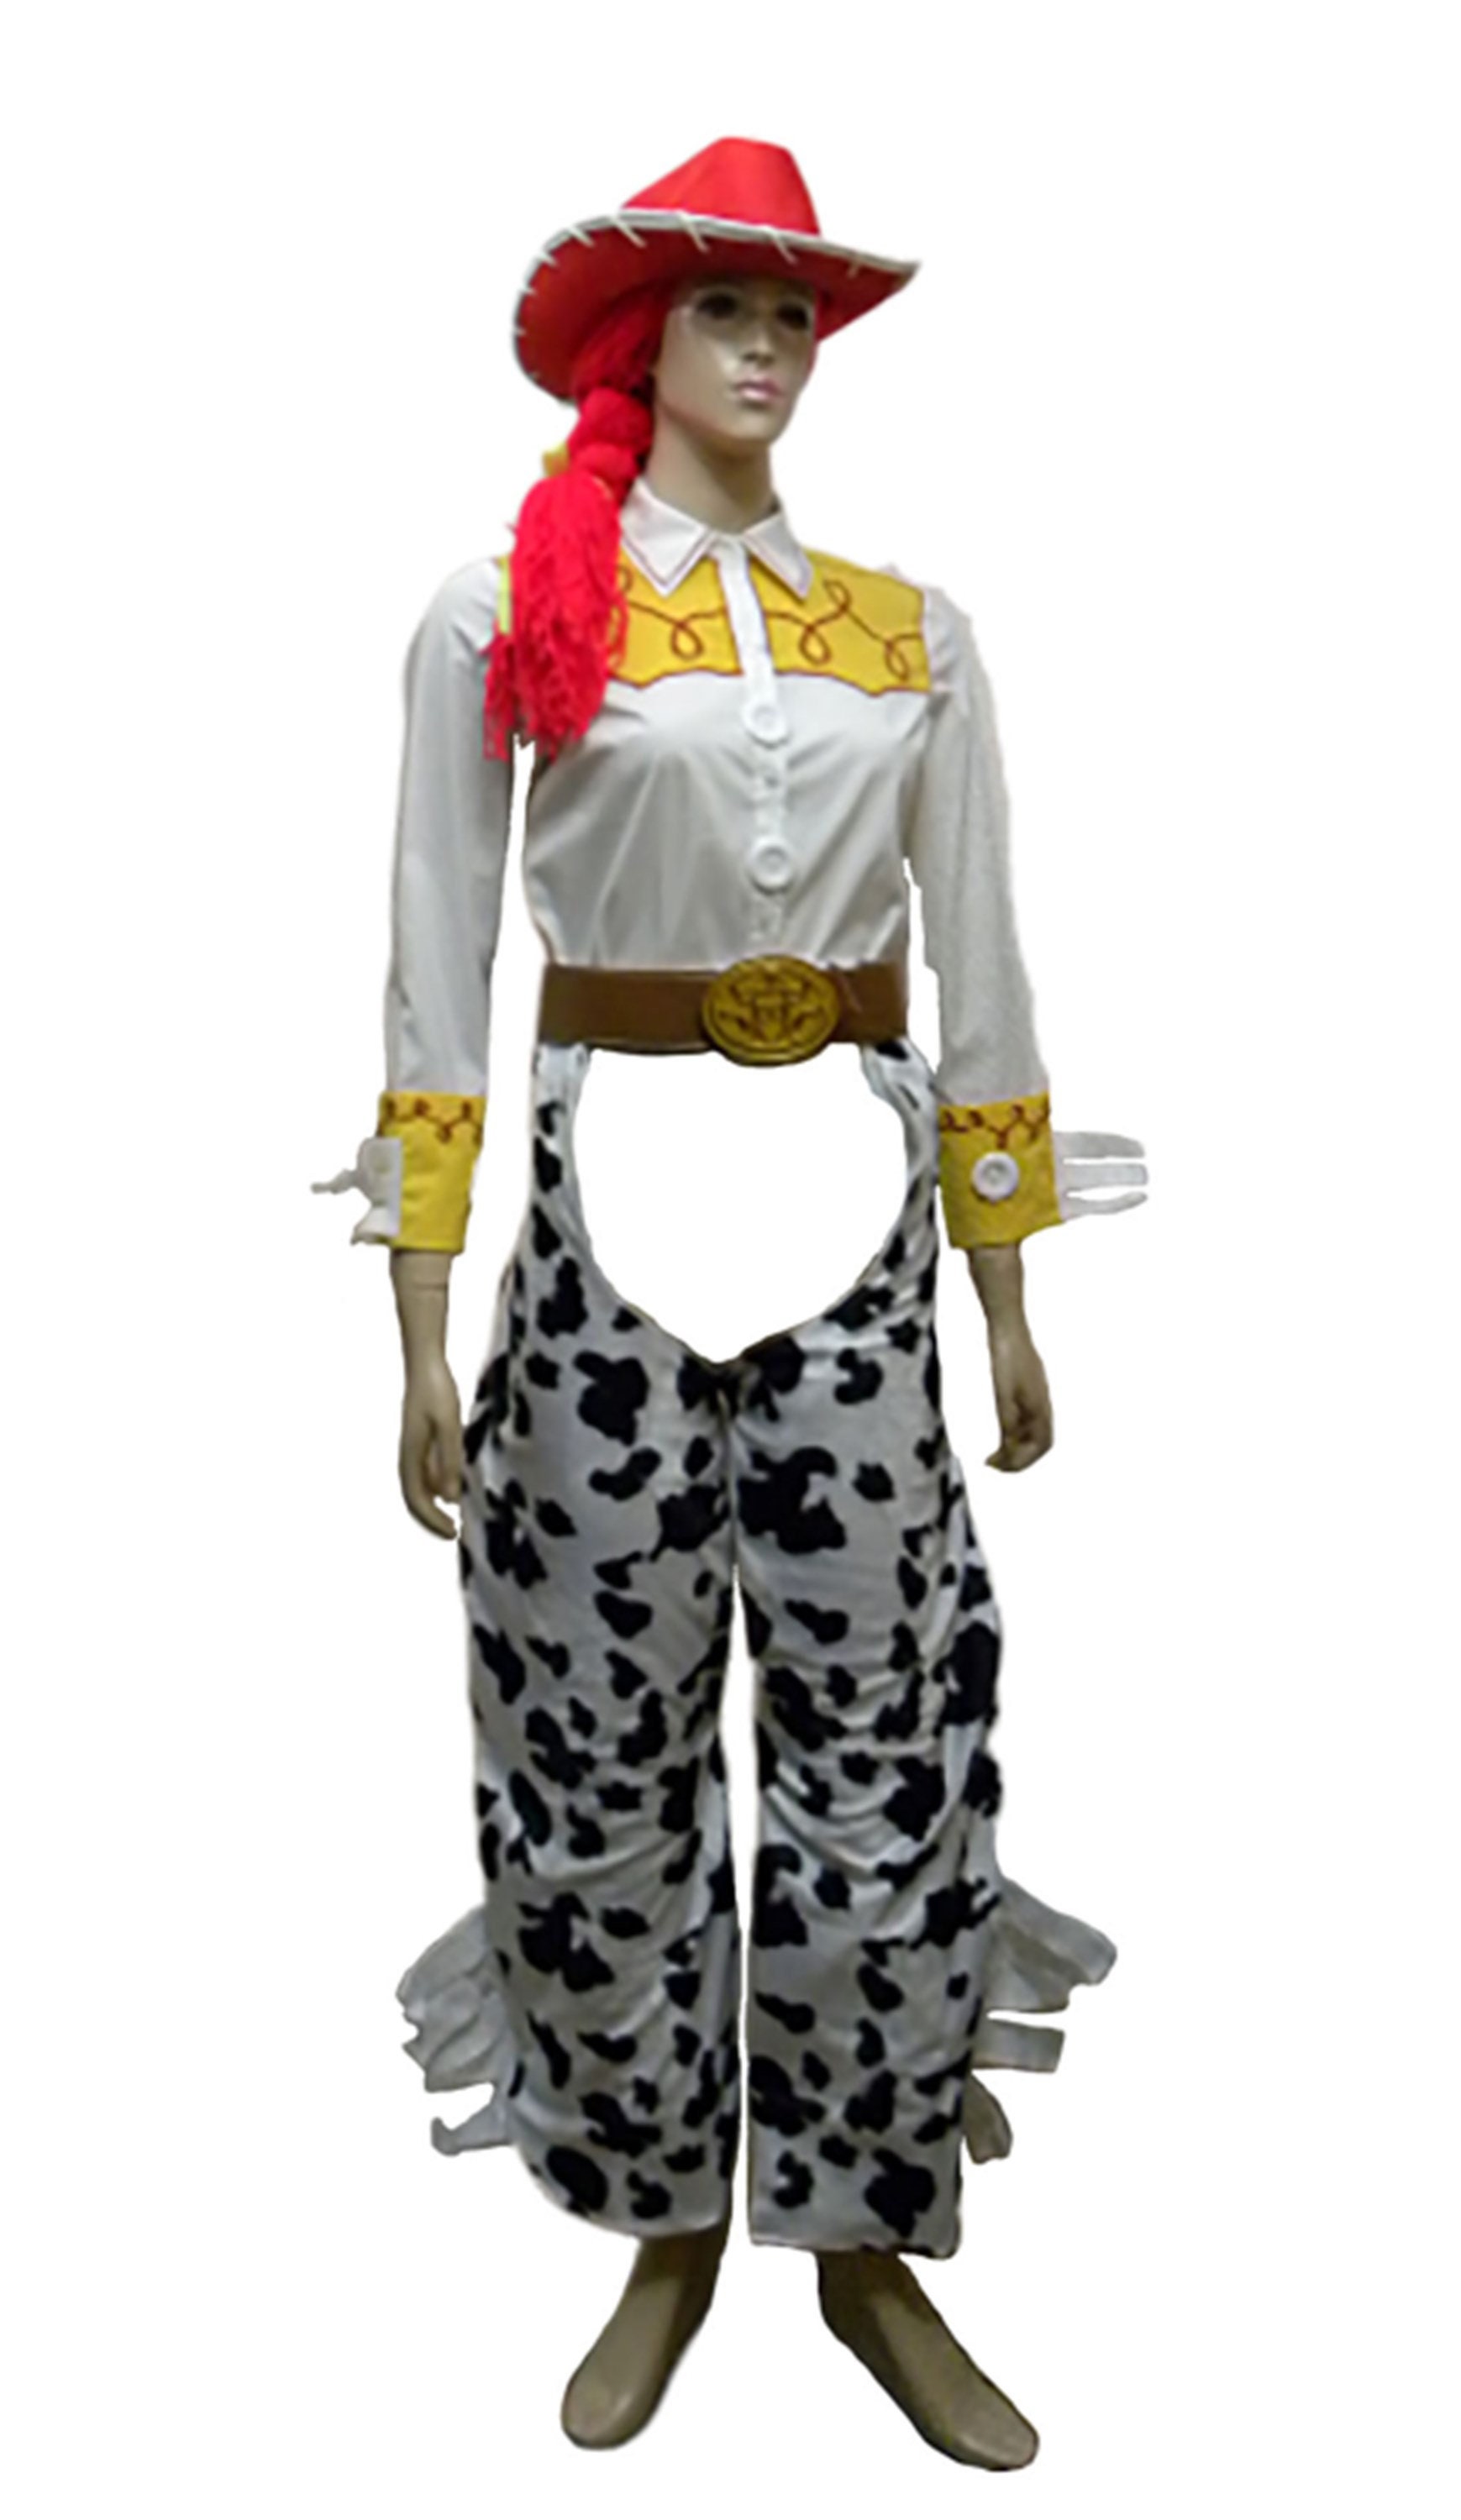 Disfraz de Jessie de Disney Toy Story de lujo para adultos, talla grande